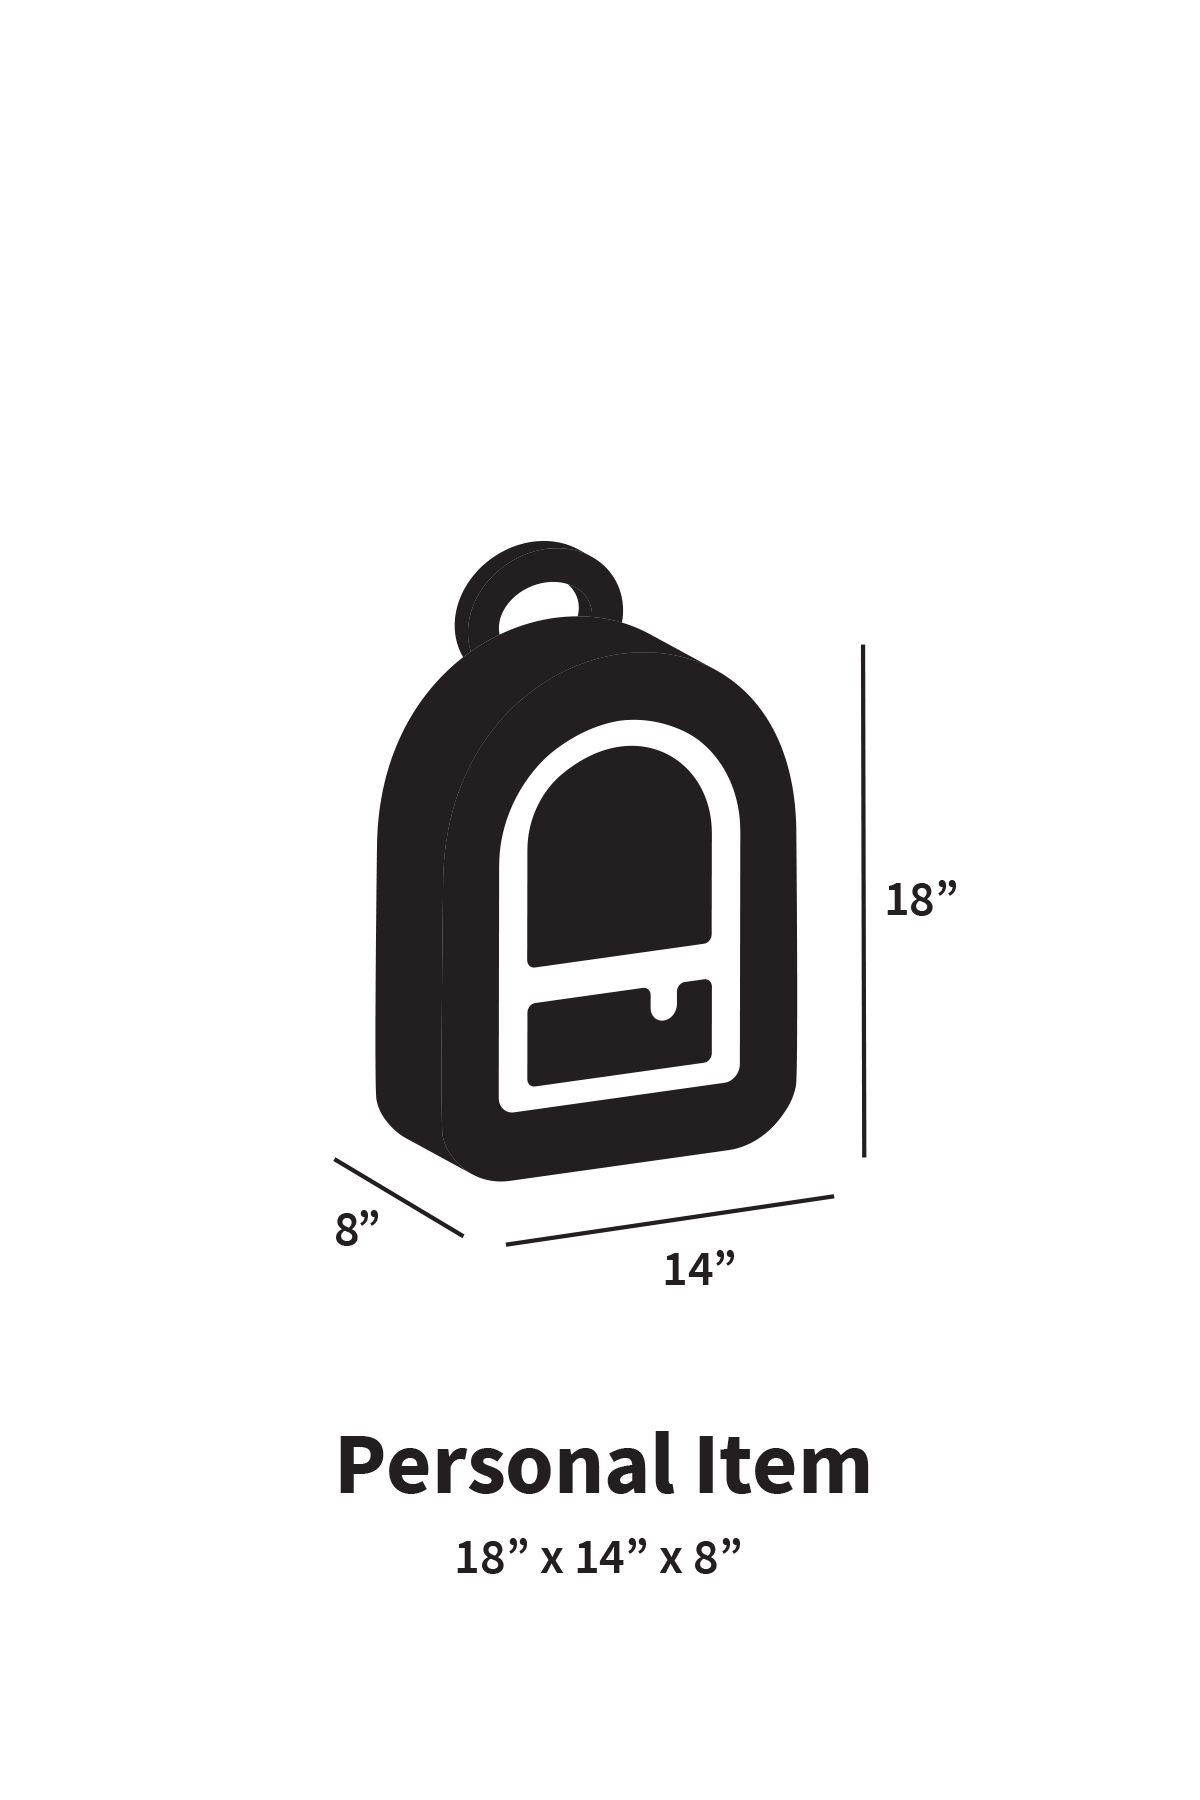 personal item dimensions